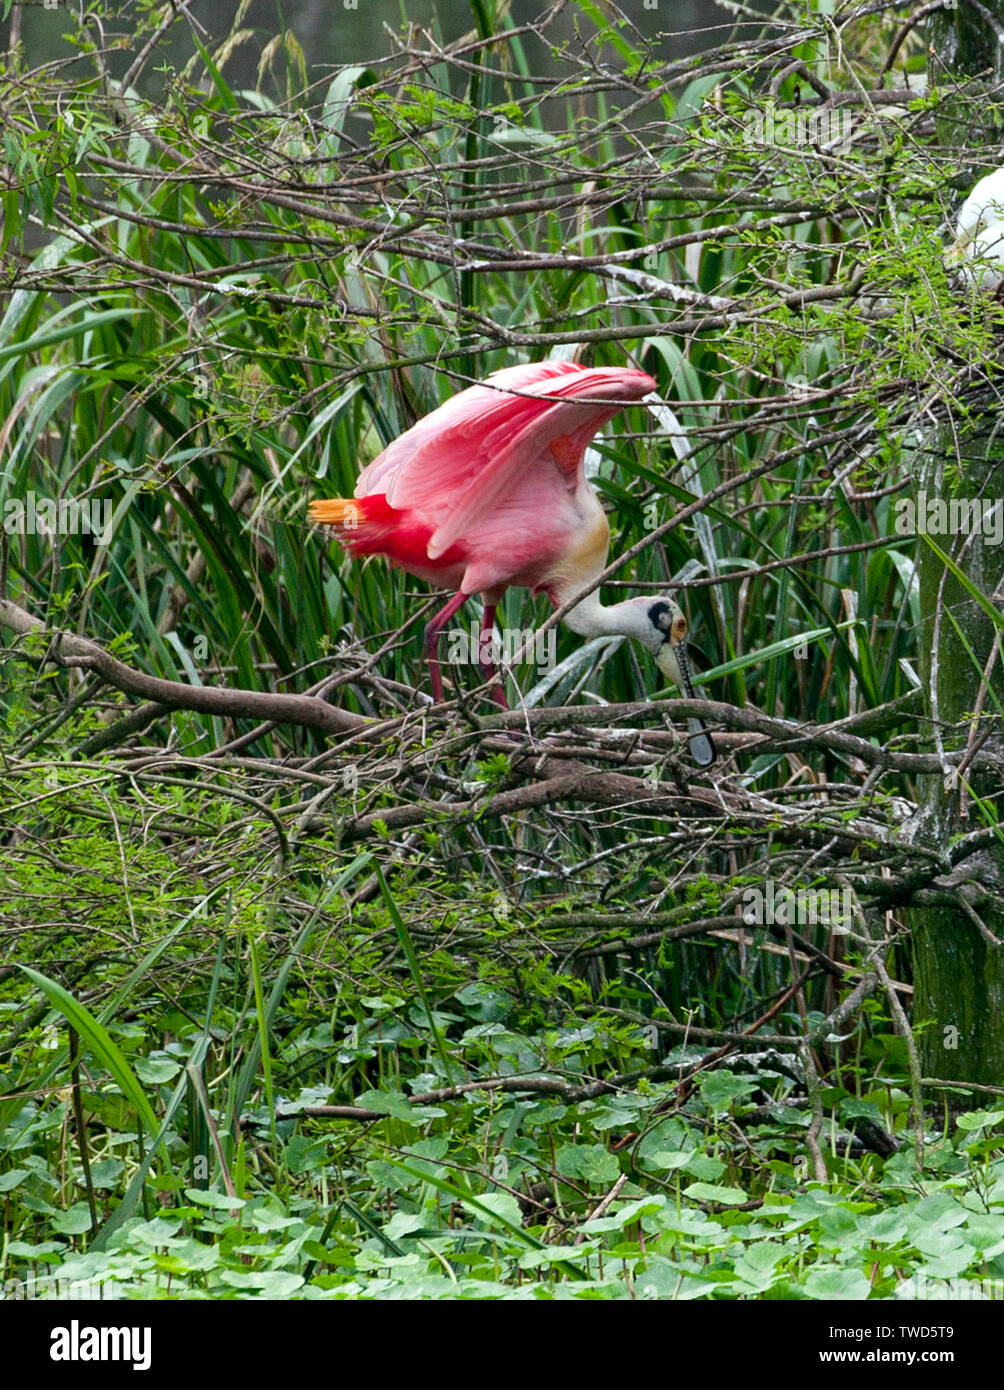 L'atterrissage montre le resplendissant d'une coloration Roseate Spoonbill, Rookery, Smith Oaks Bird Sanctuary, île haute, au Texas. Remarque la queue orange rose Banque D'Images